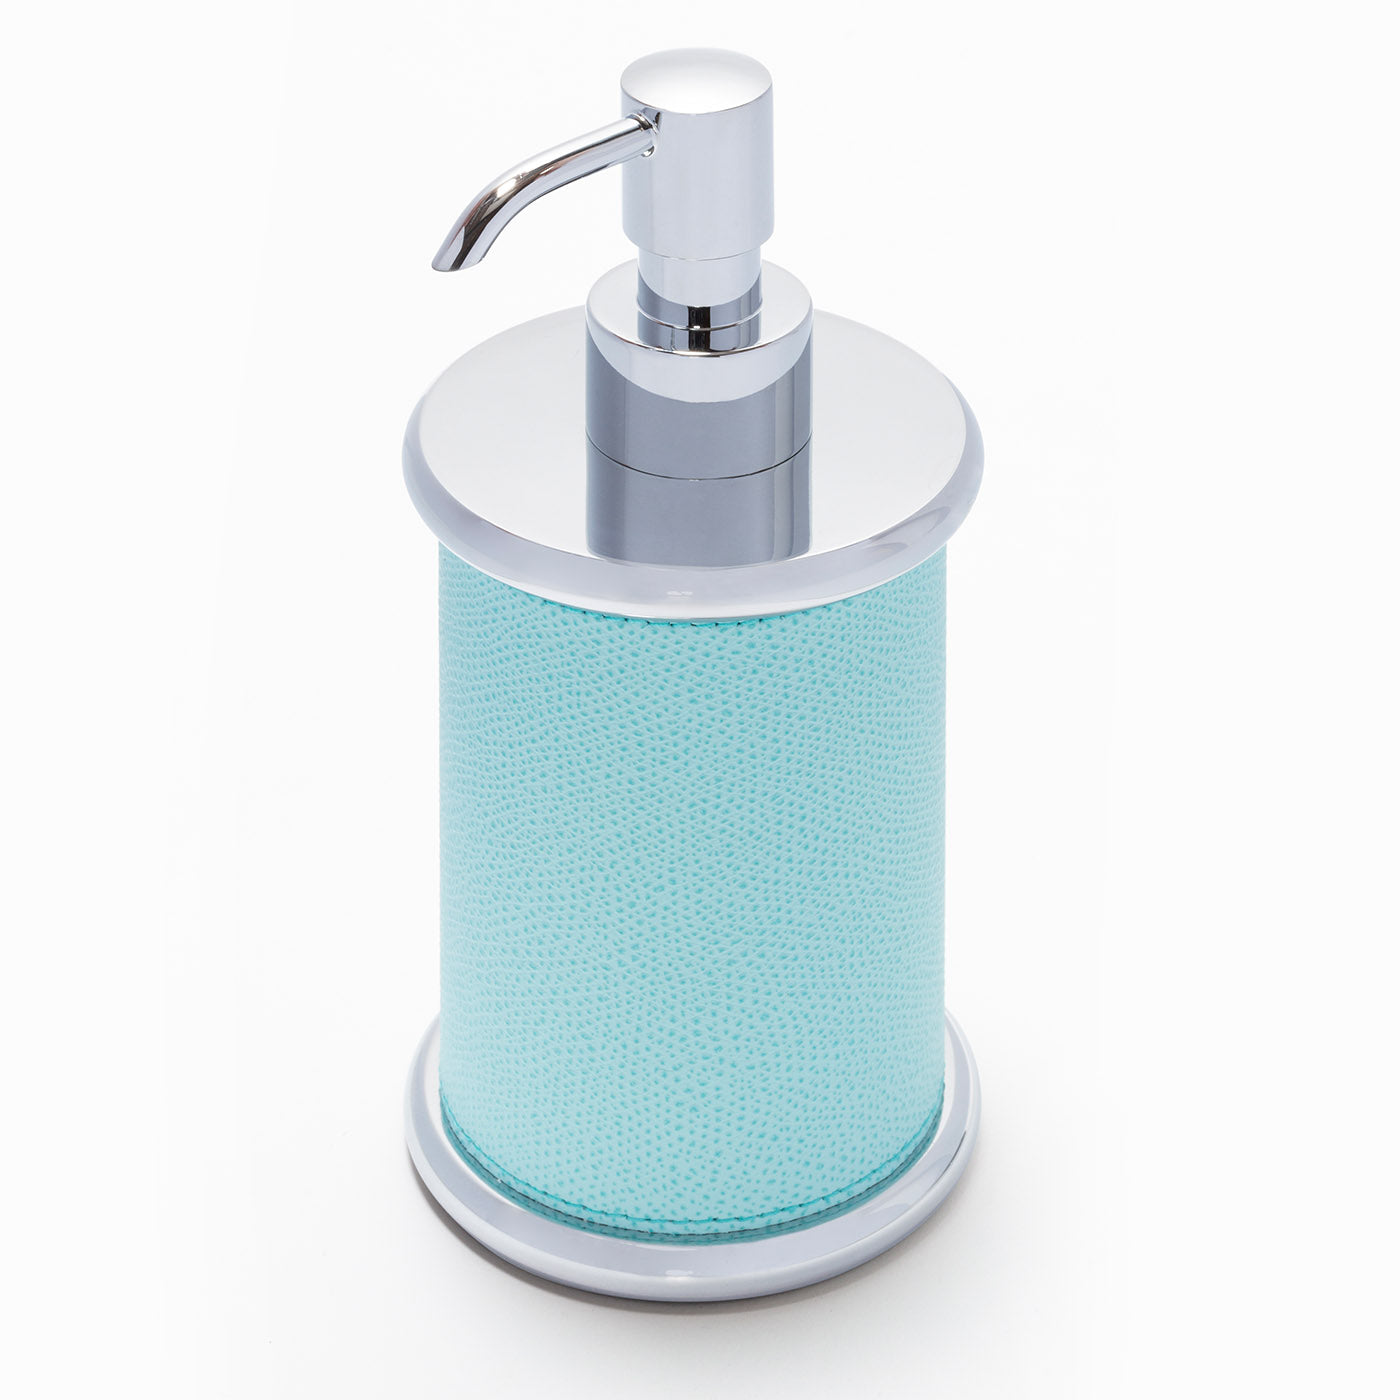 Ravello Soap Dispenser #1 - Alternative view 1